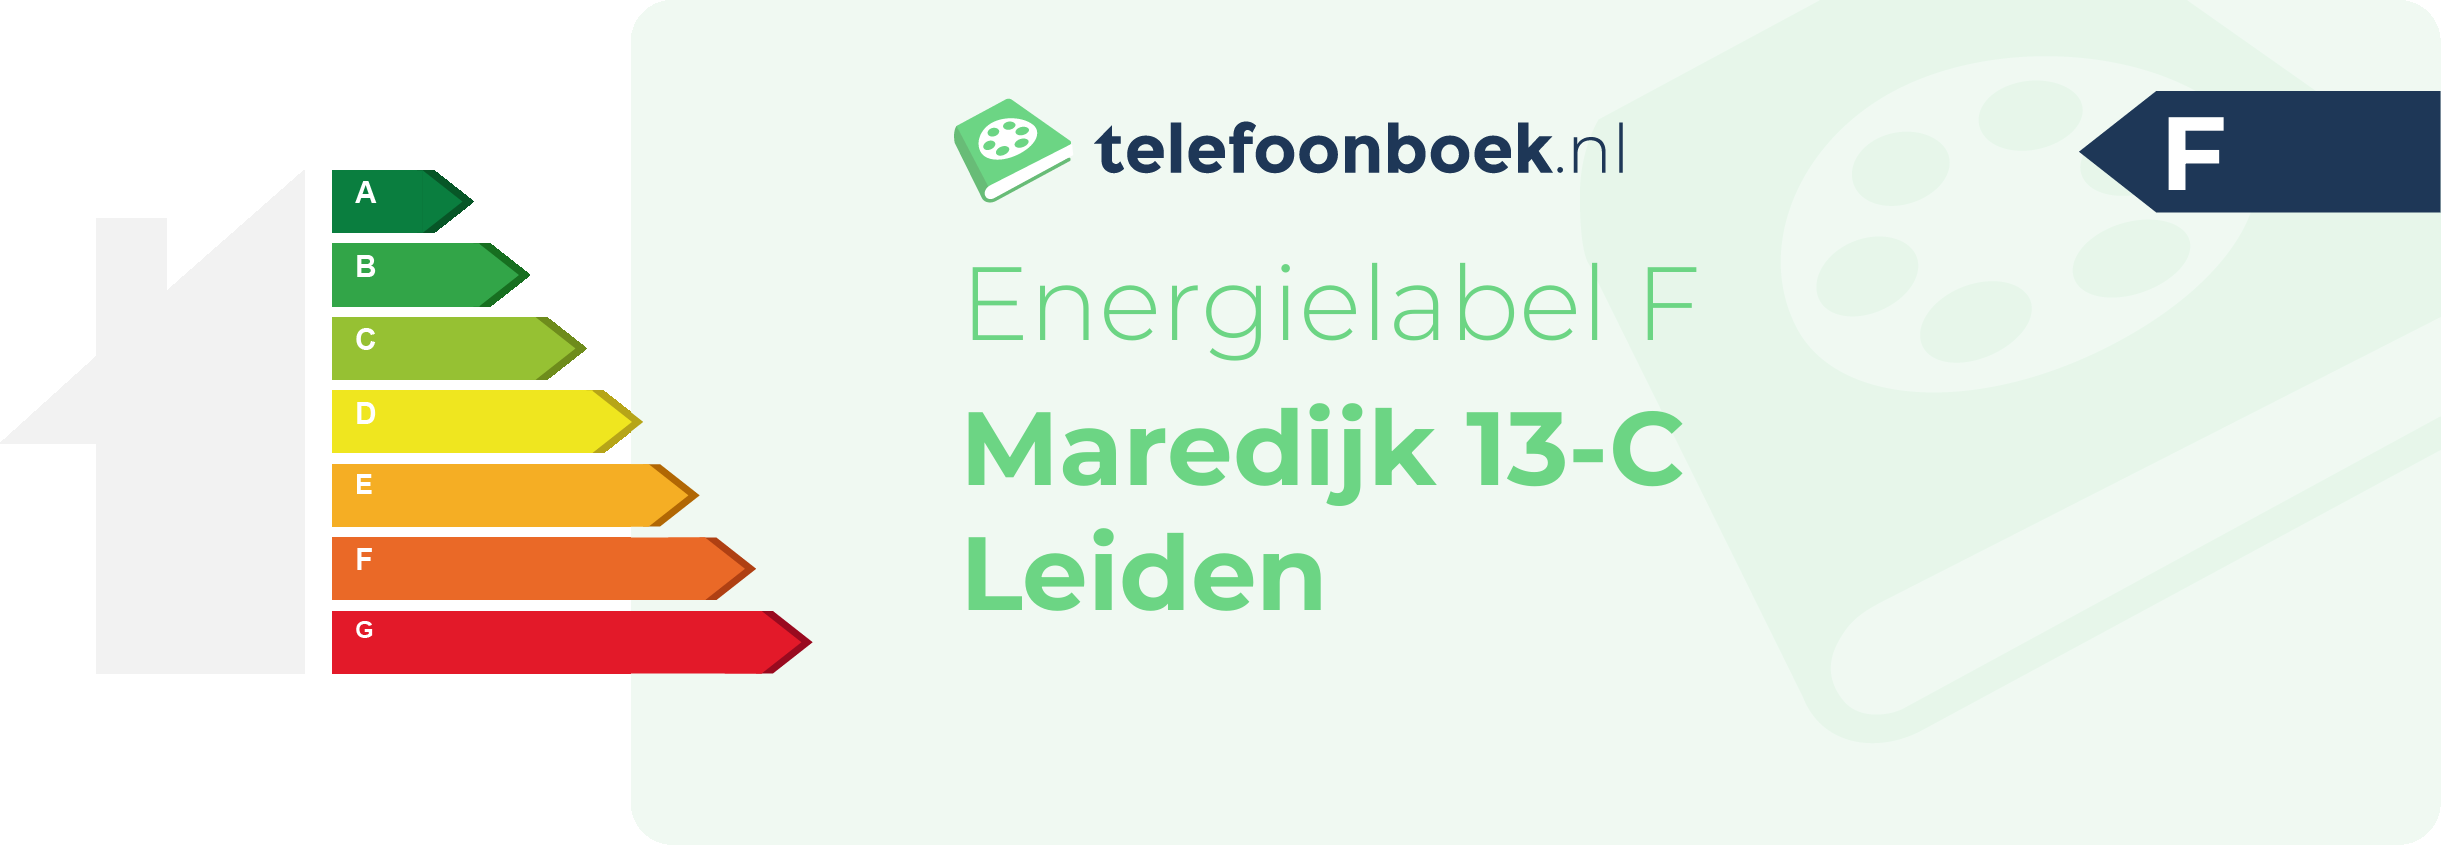 Energielabel Maredijk 13-C Leiden